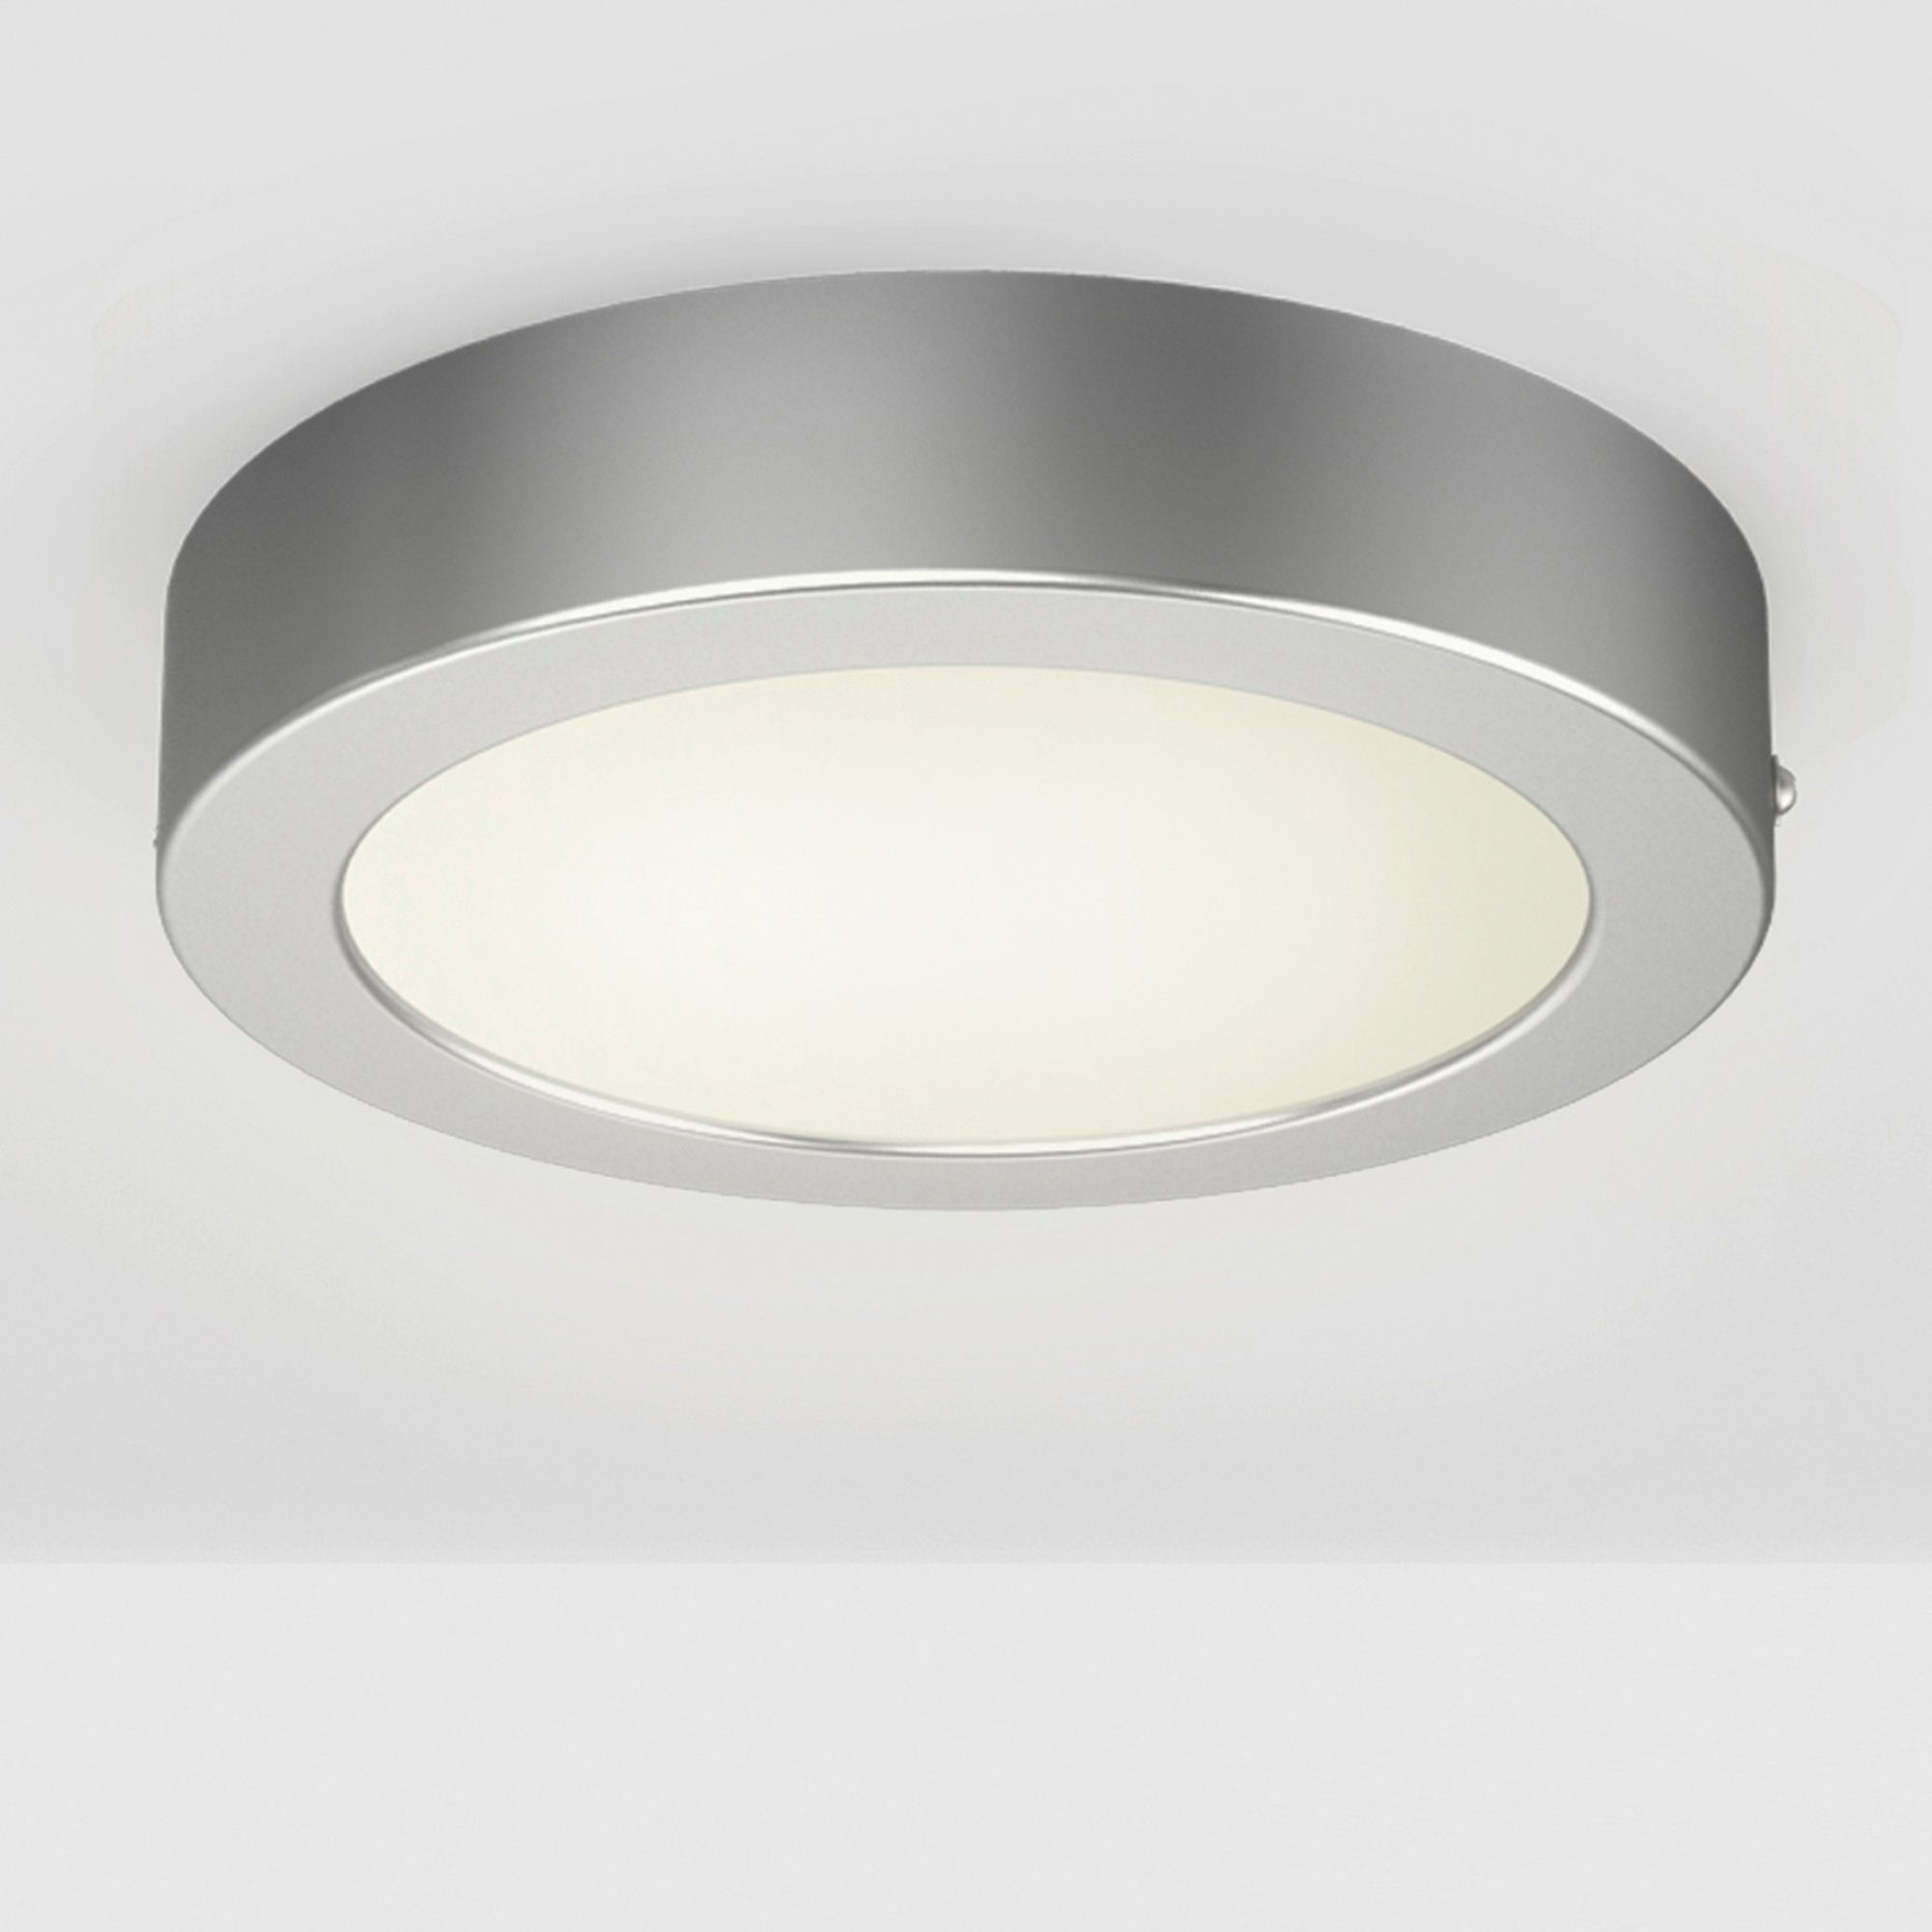 B.K.Licht LED Aufbaustrahler Wand-Leuchte, 230V, Aufputz-Deckenlampe, Garnet, Panel, silber Deckenleuchte, Warmweiß, integriert, fest LED